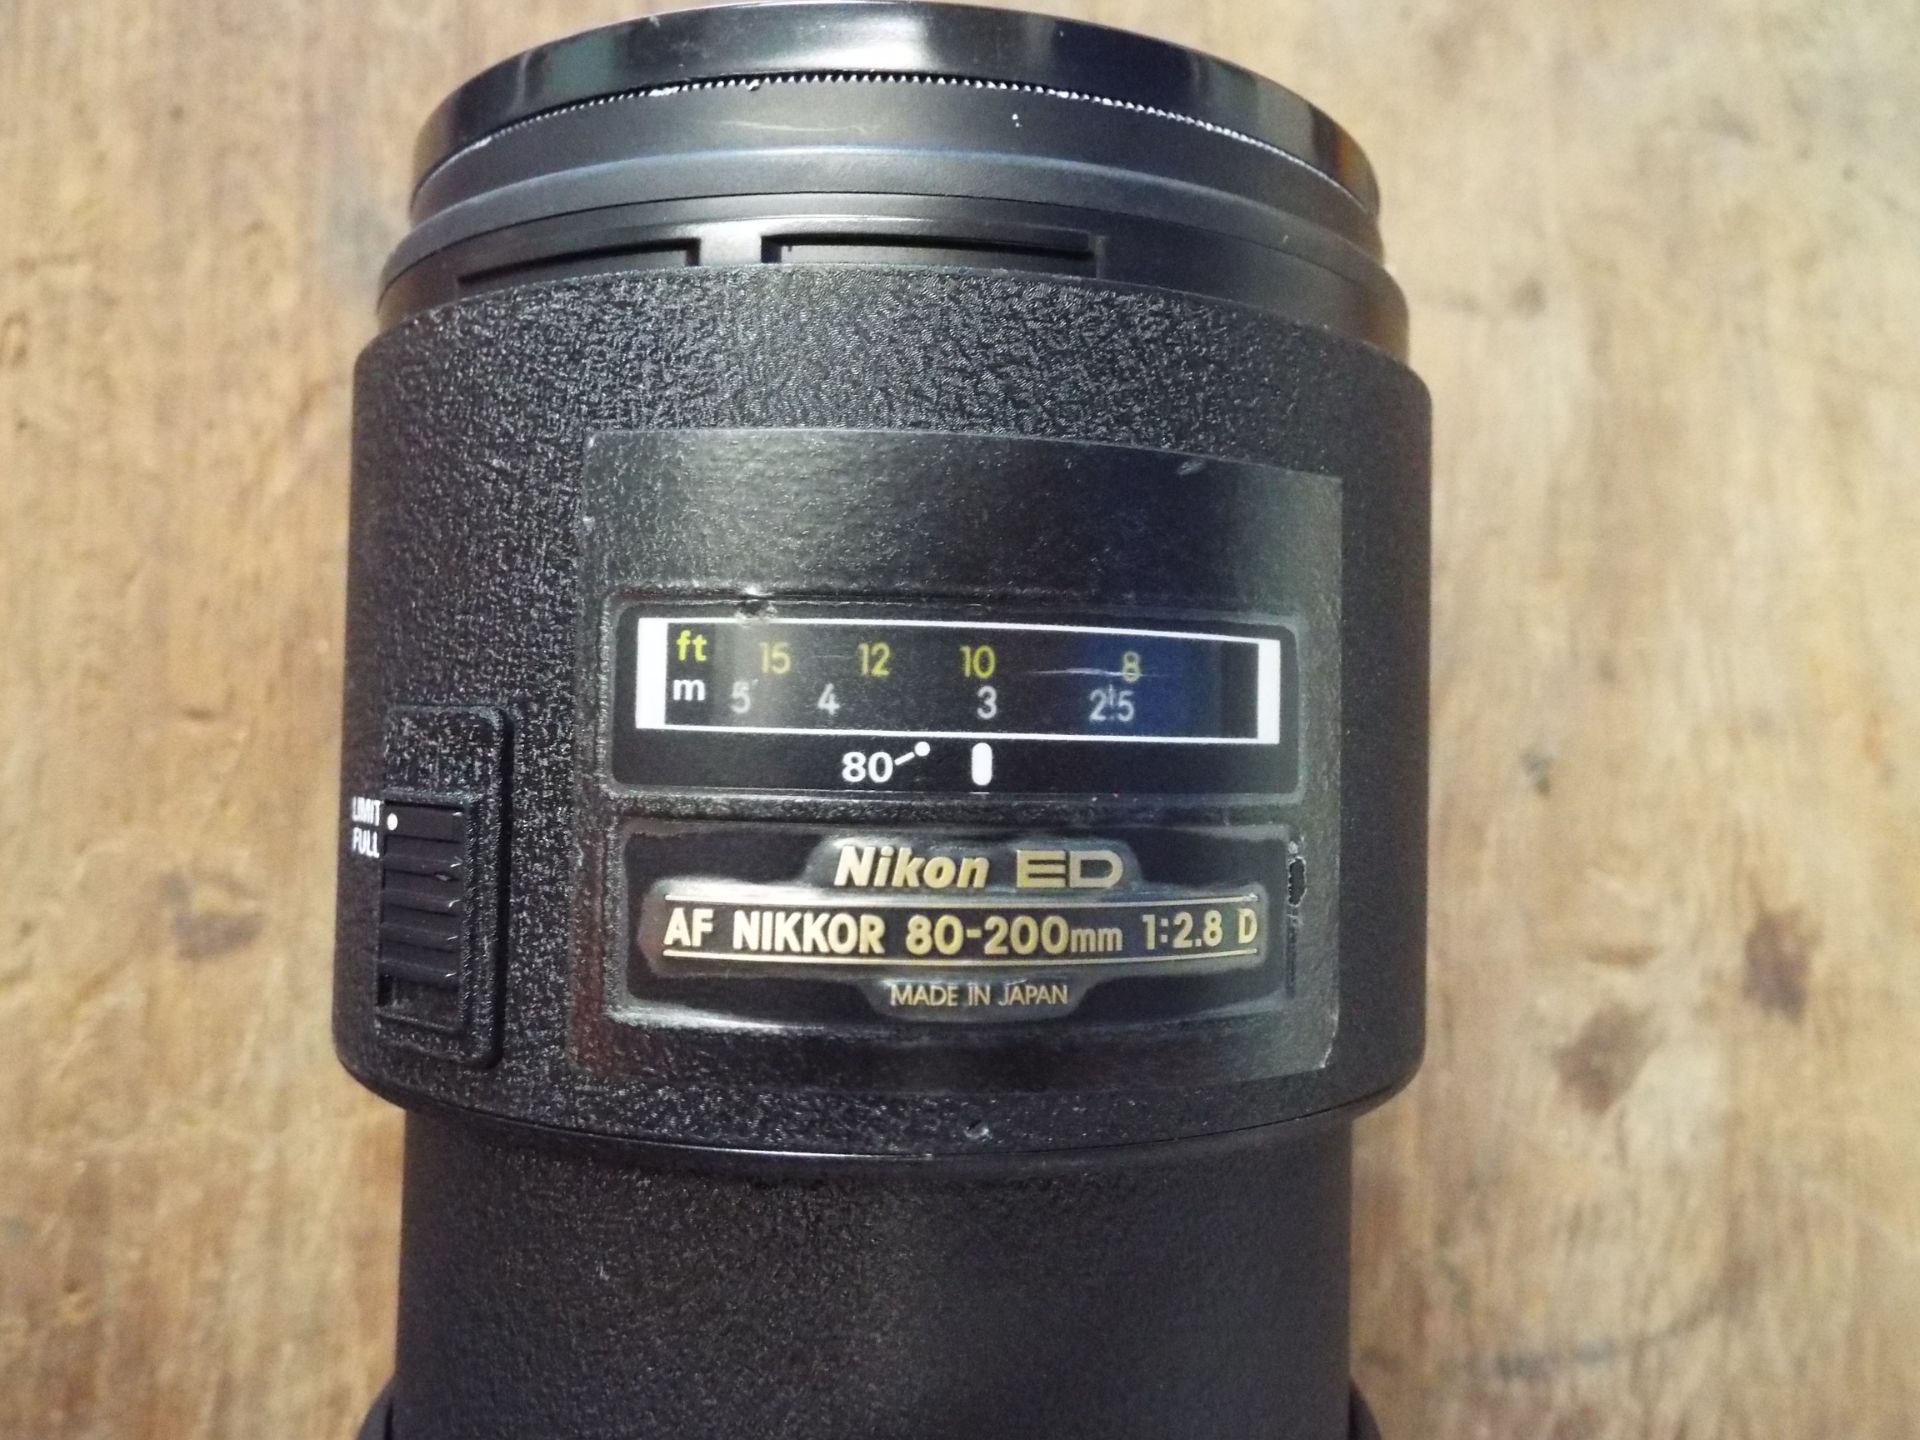 Nikon ED AF Nikkor 80-200mm 1:2.8 D Lense with Leather Carry Case - Bild 3 aus 8